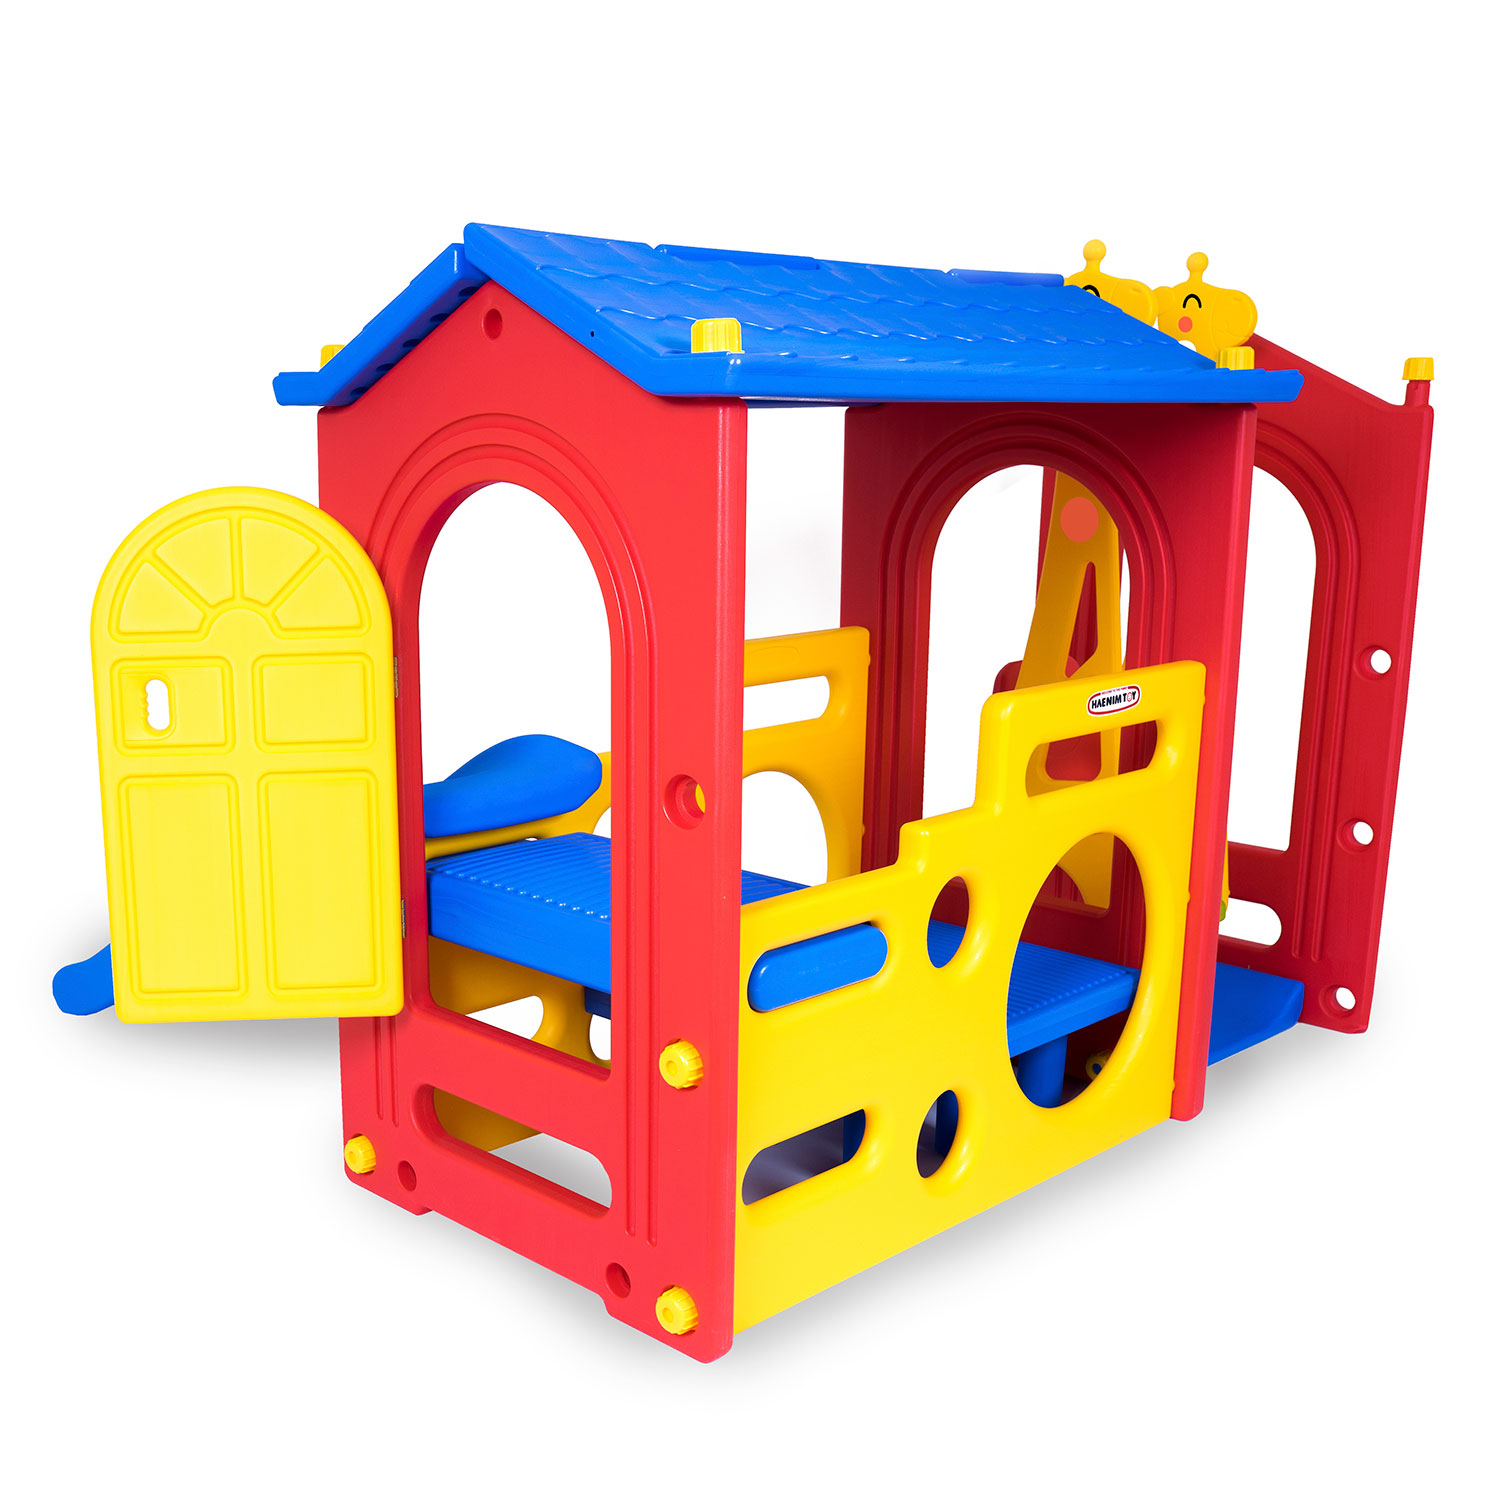 Детский игровой комплекс для дома и улицы: игровой домик, детская горка, детские качели, лаз  